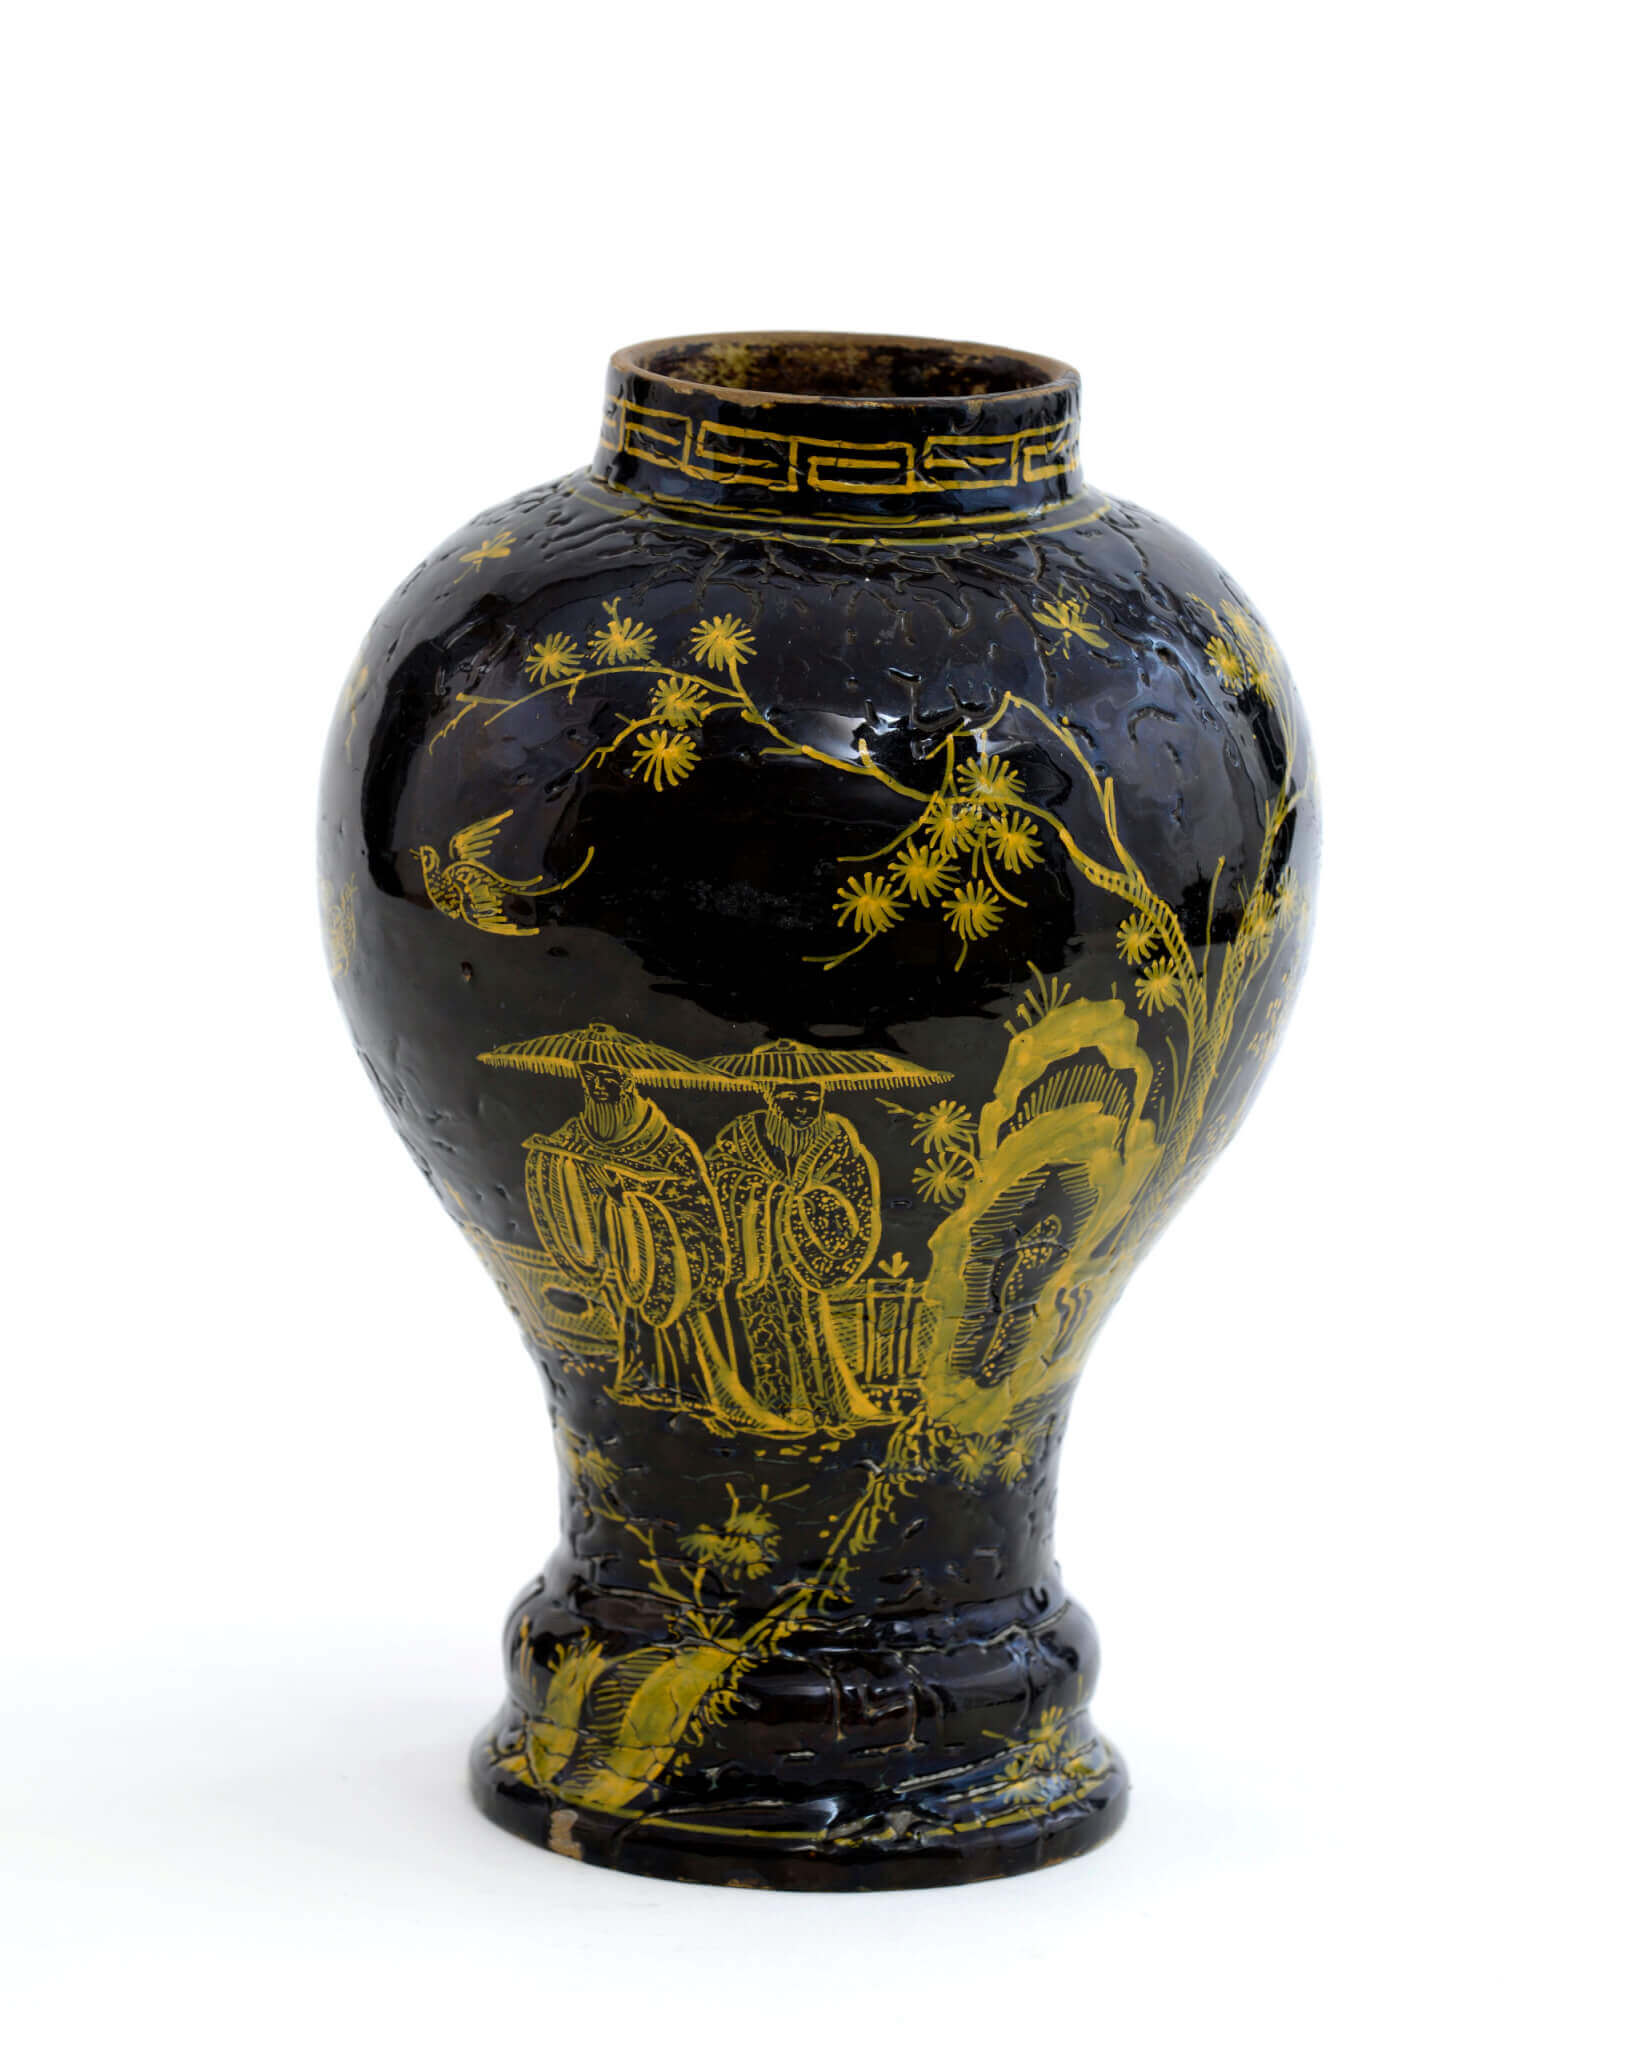 Brown-glazed baluster-shaped vase